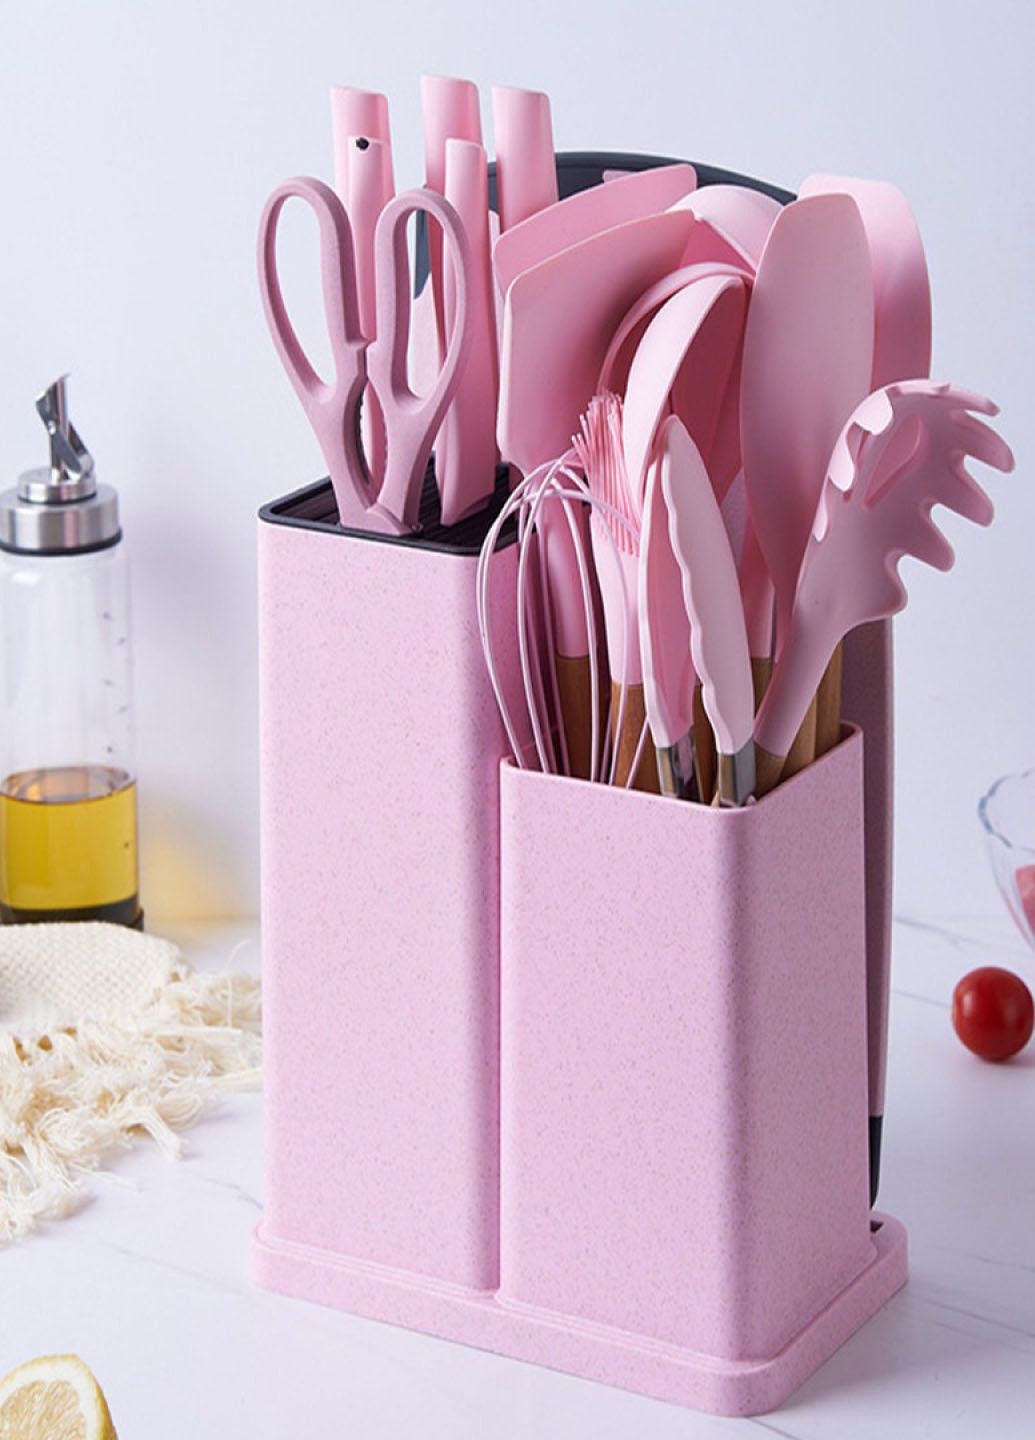 Многофункциональный набор кухонных принадлежностей на подставке из силикона с бамбуковой ручкой 19 предметов Good Idea (285719056)